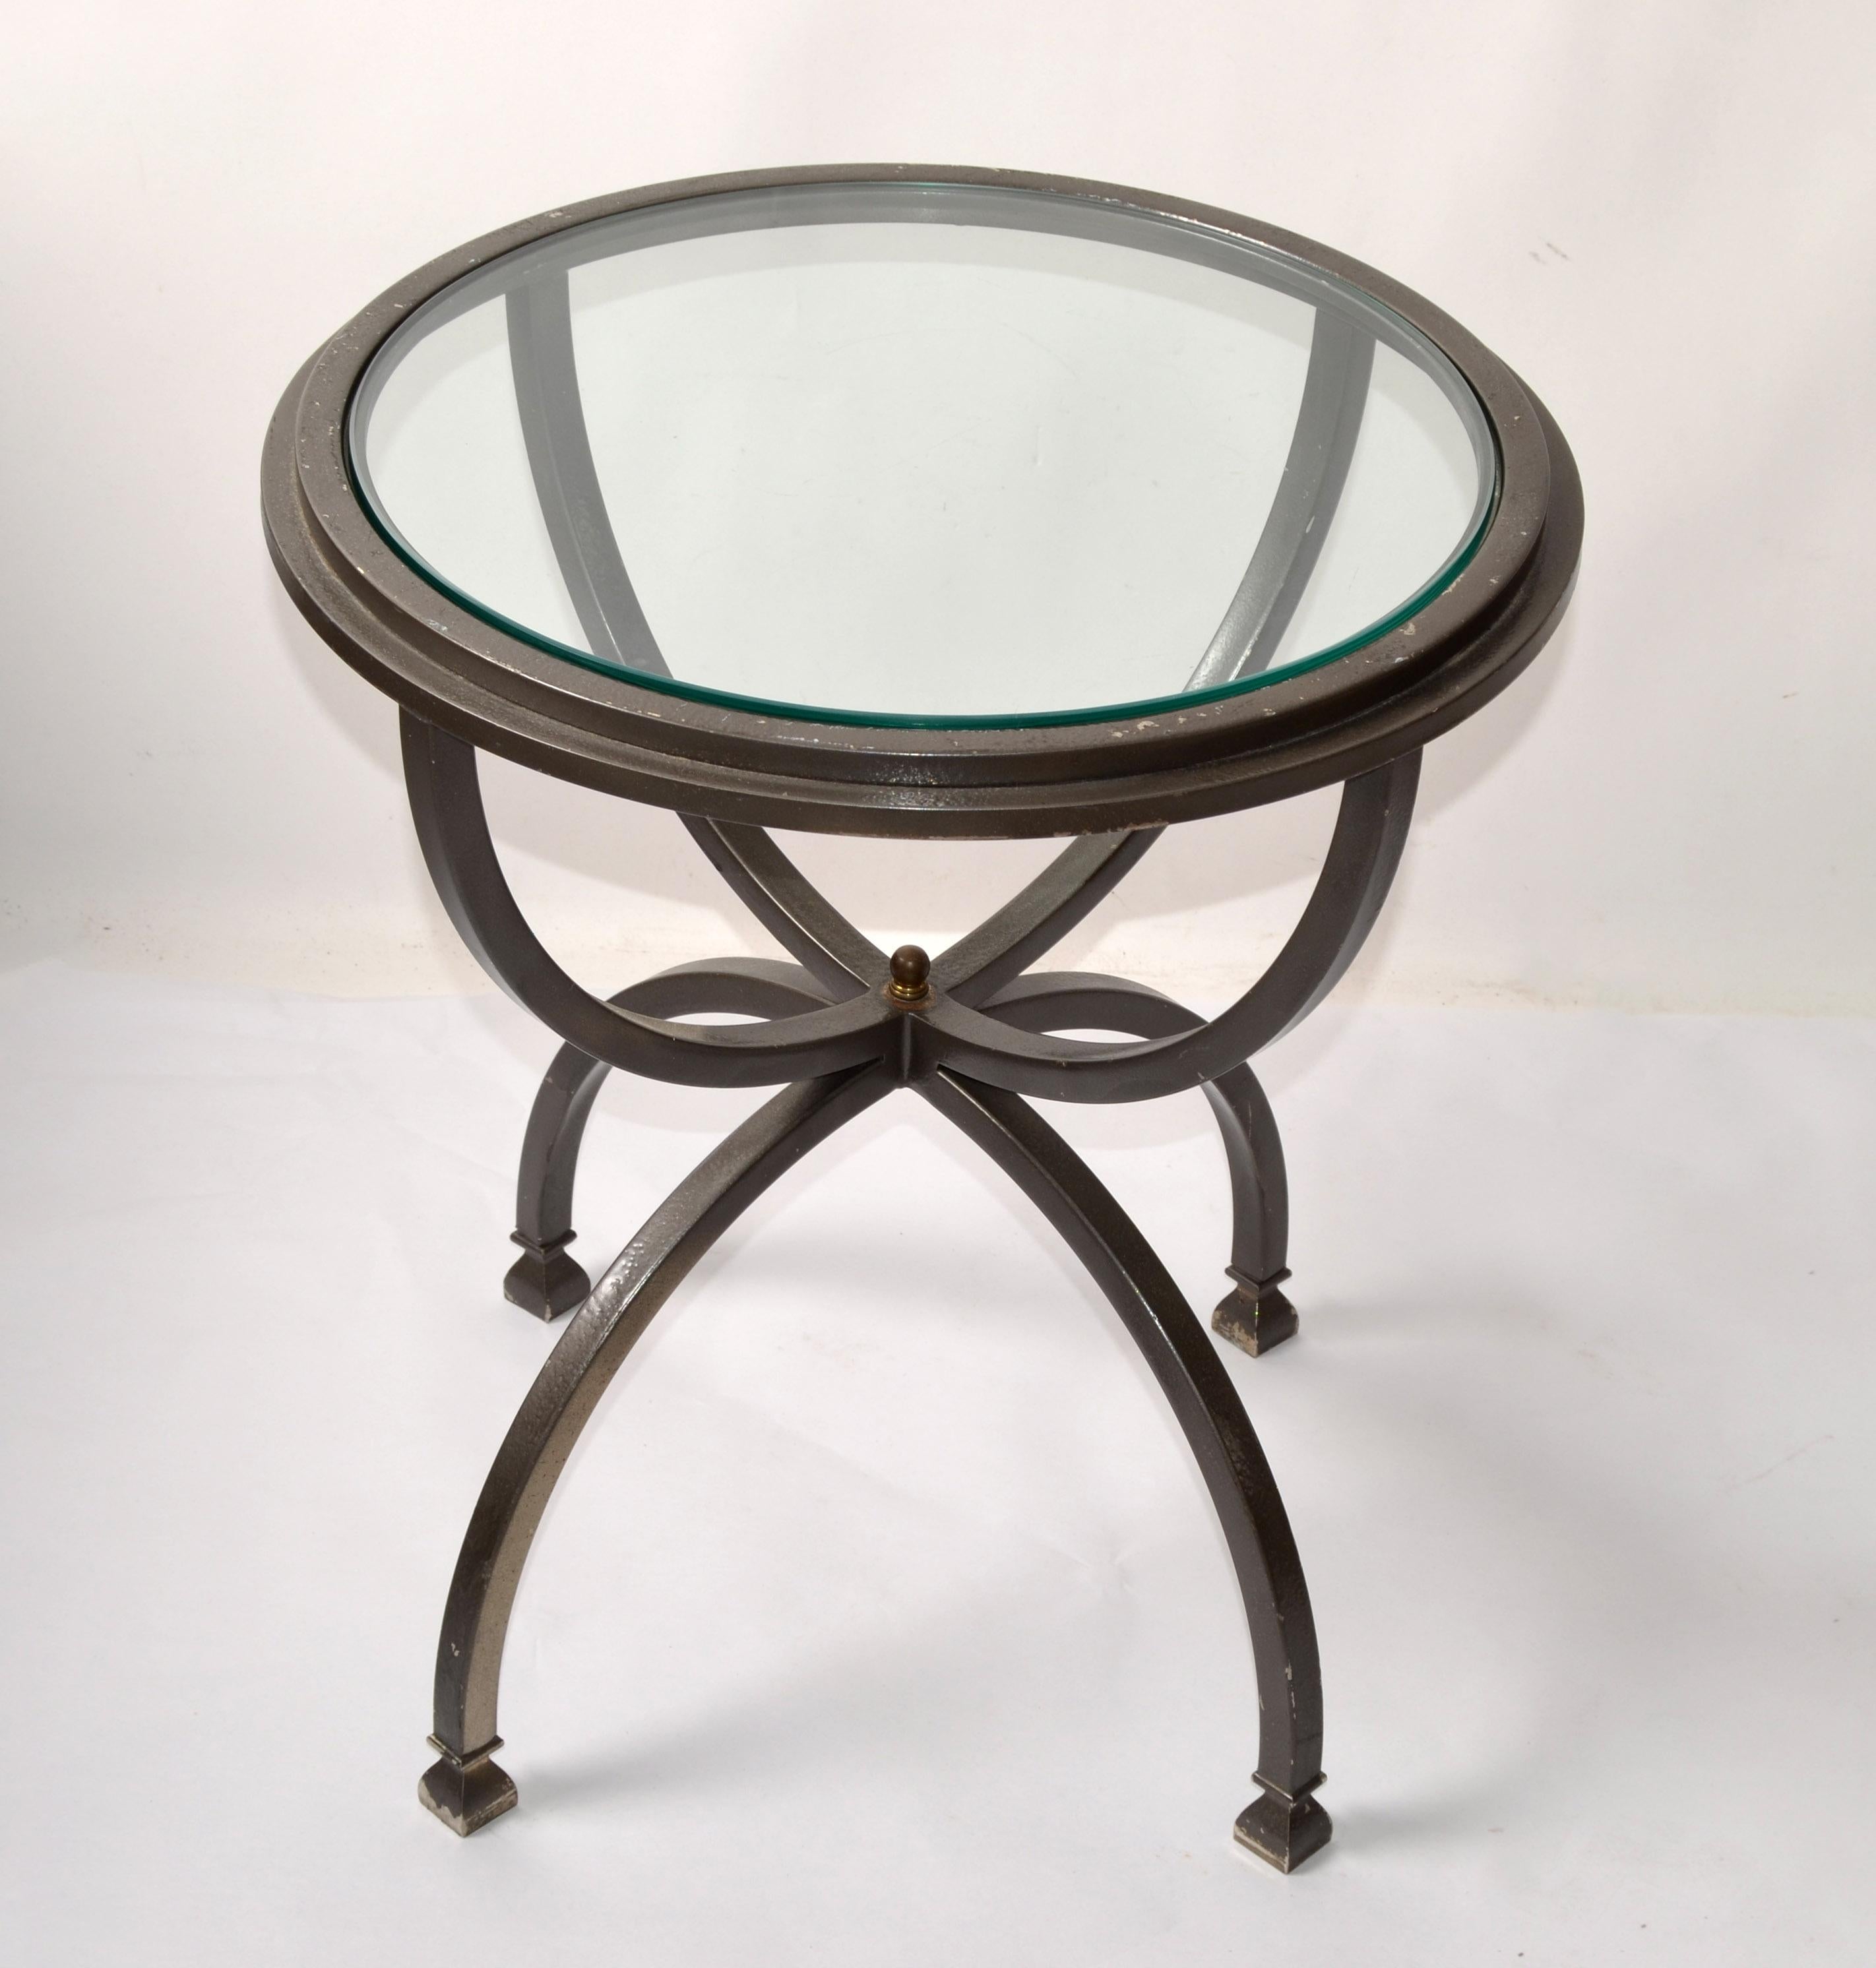 Mid-Century Modern French Maison Jansen Style Bend Steel Side, End oder Drink Tisch mit runden Glasplatte einfügen.
Die Messingverzierung in der Mitte, wo die skulpturale Basis und der obere Rahmen verbunden sind.
Das dunkle silbergraue Finish hat